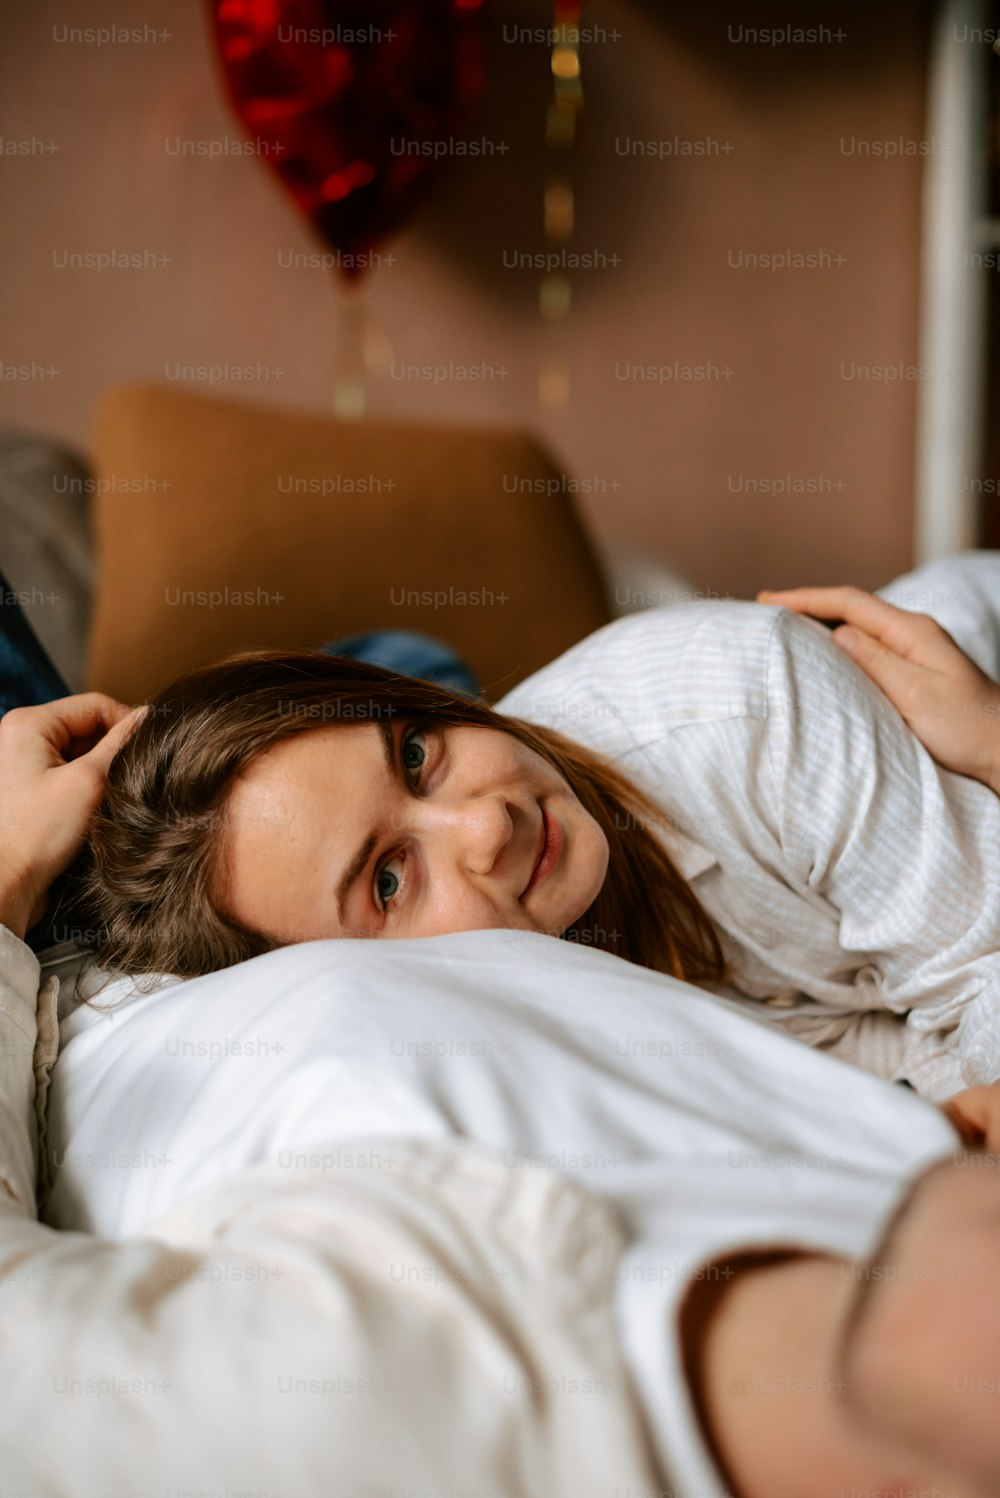 Una donna sdraiata sul letto con un cuore appeso sopra la sua testa